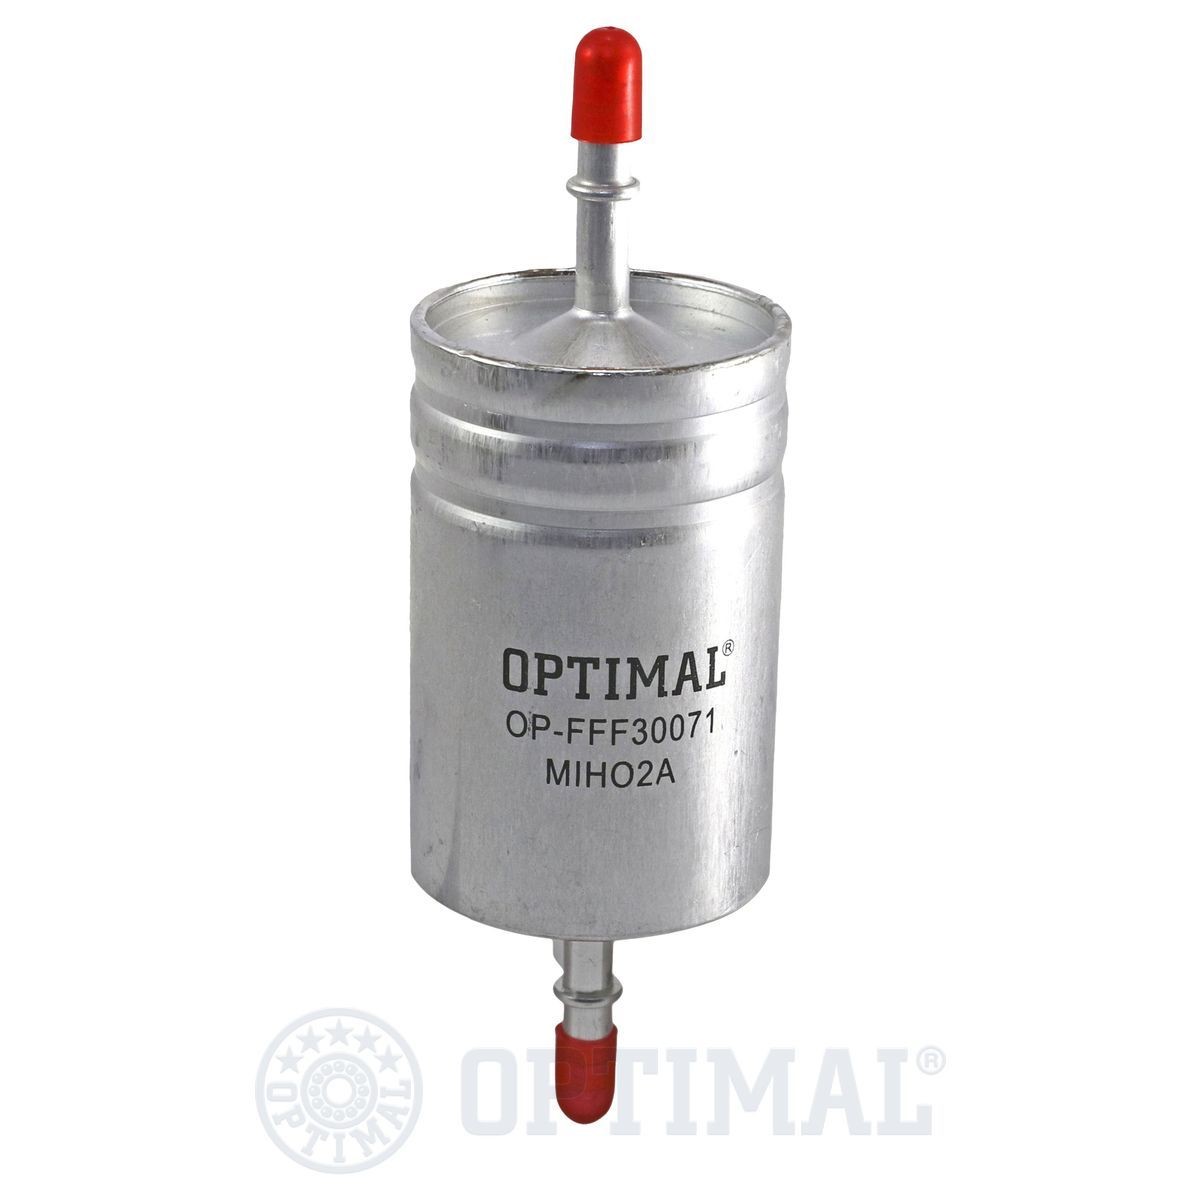 OPTIMAL OP-FFF30071 Fuel filter C2S 2768